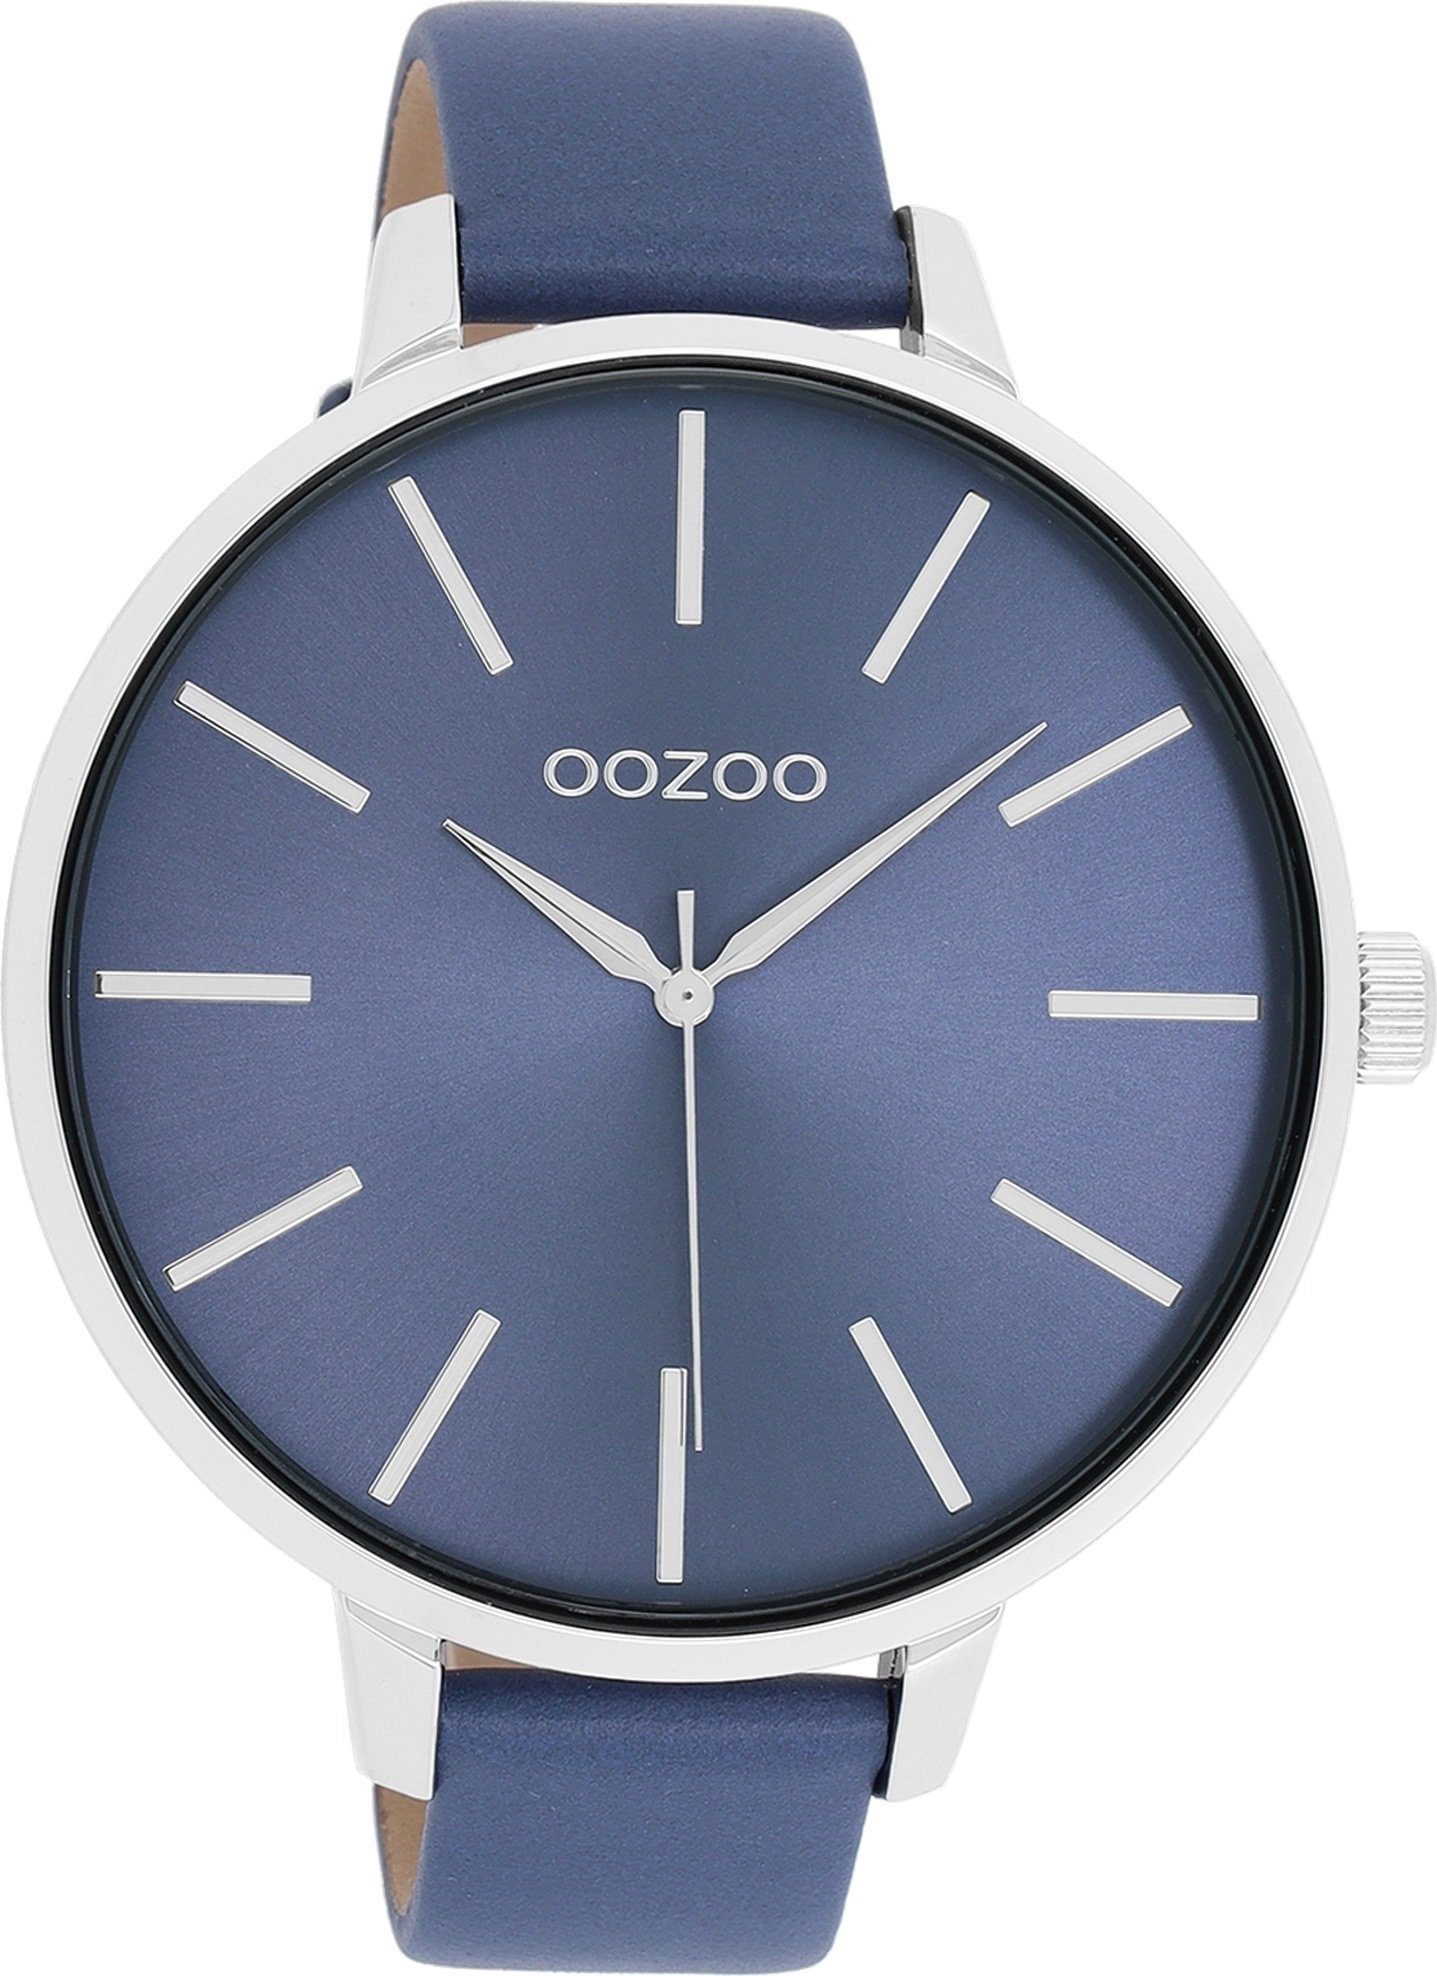 Blaue OOZOO Damenuhren online kaufen | OTTO